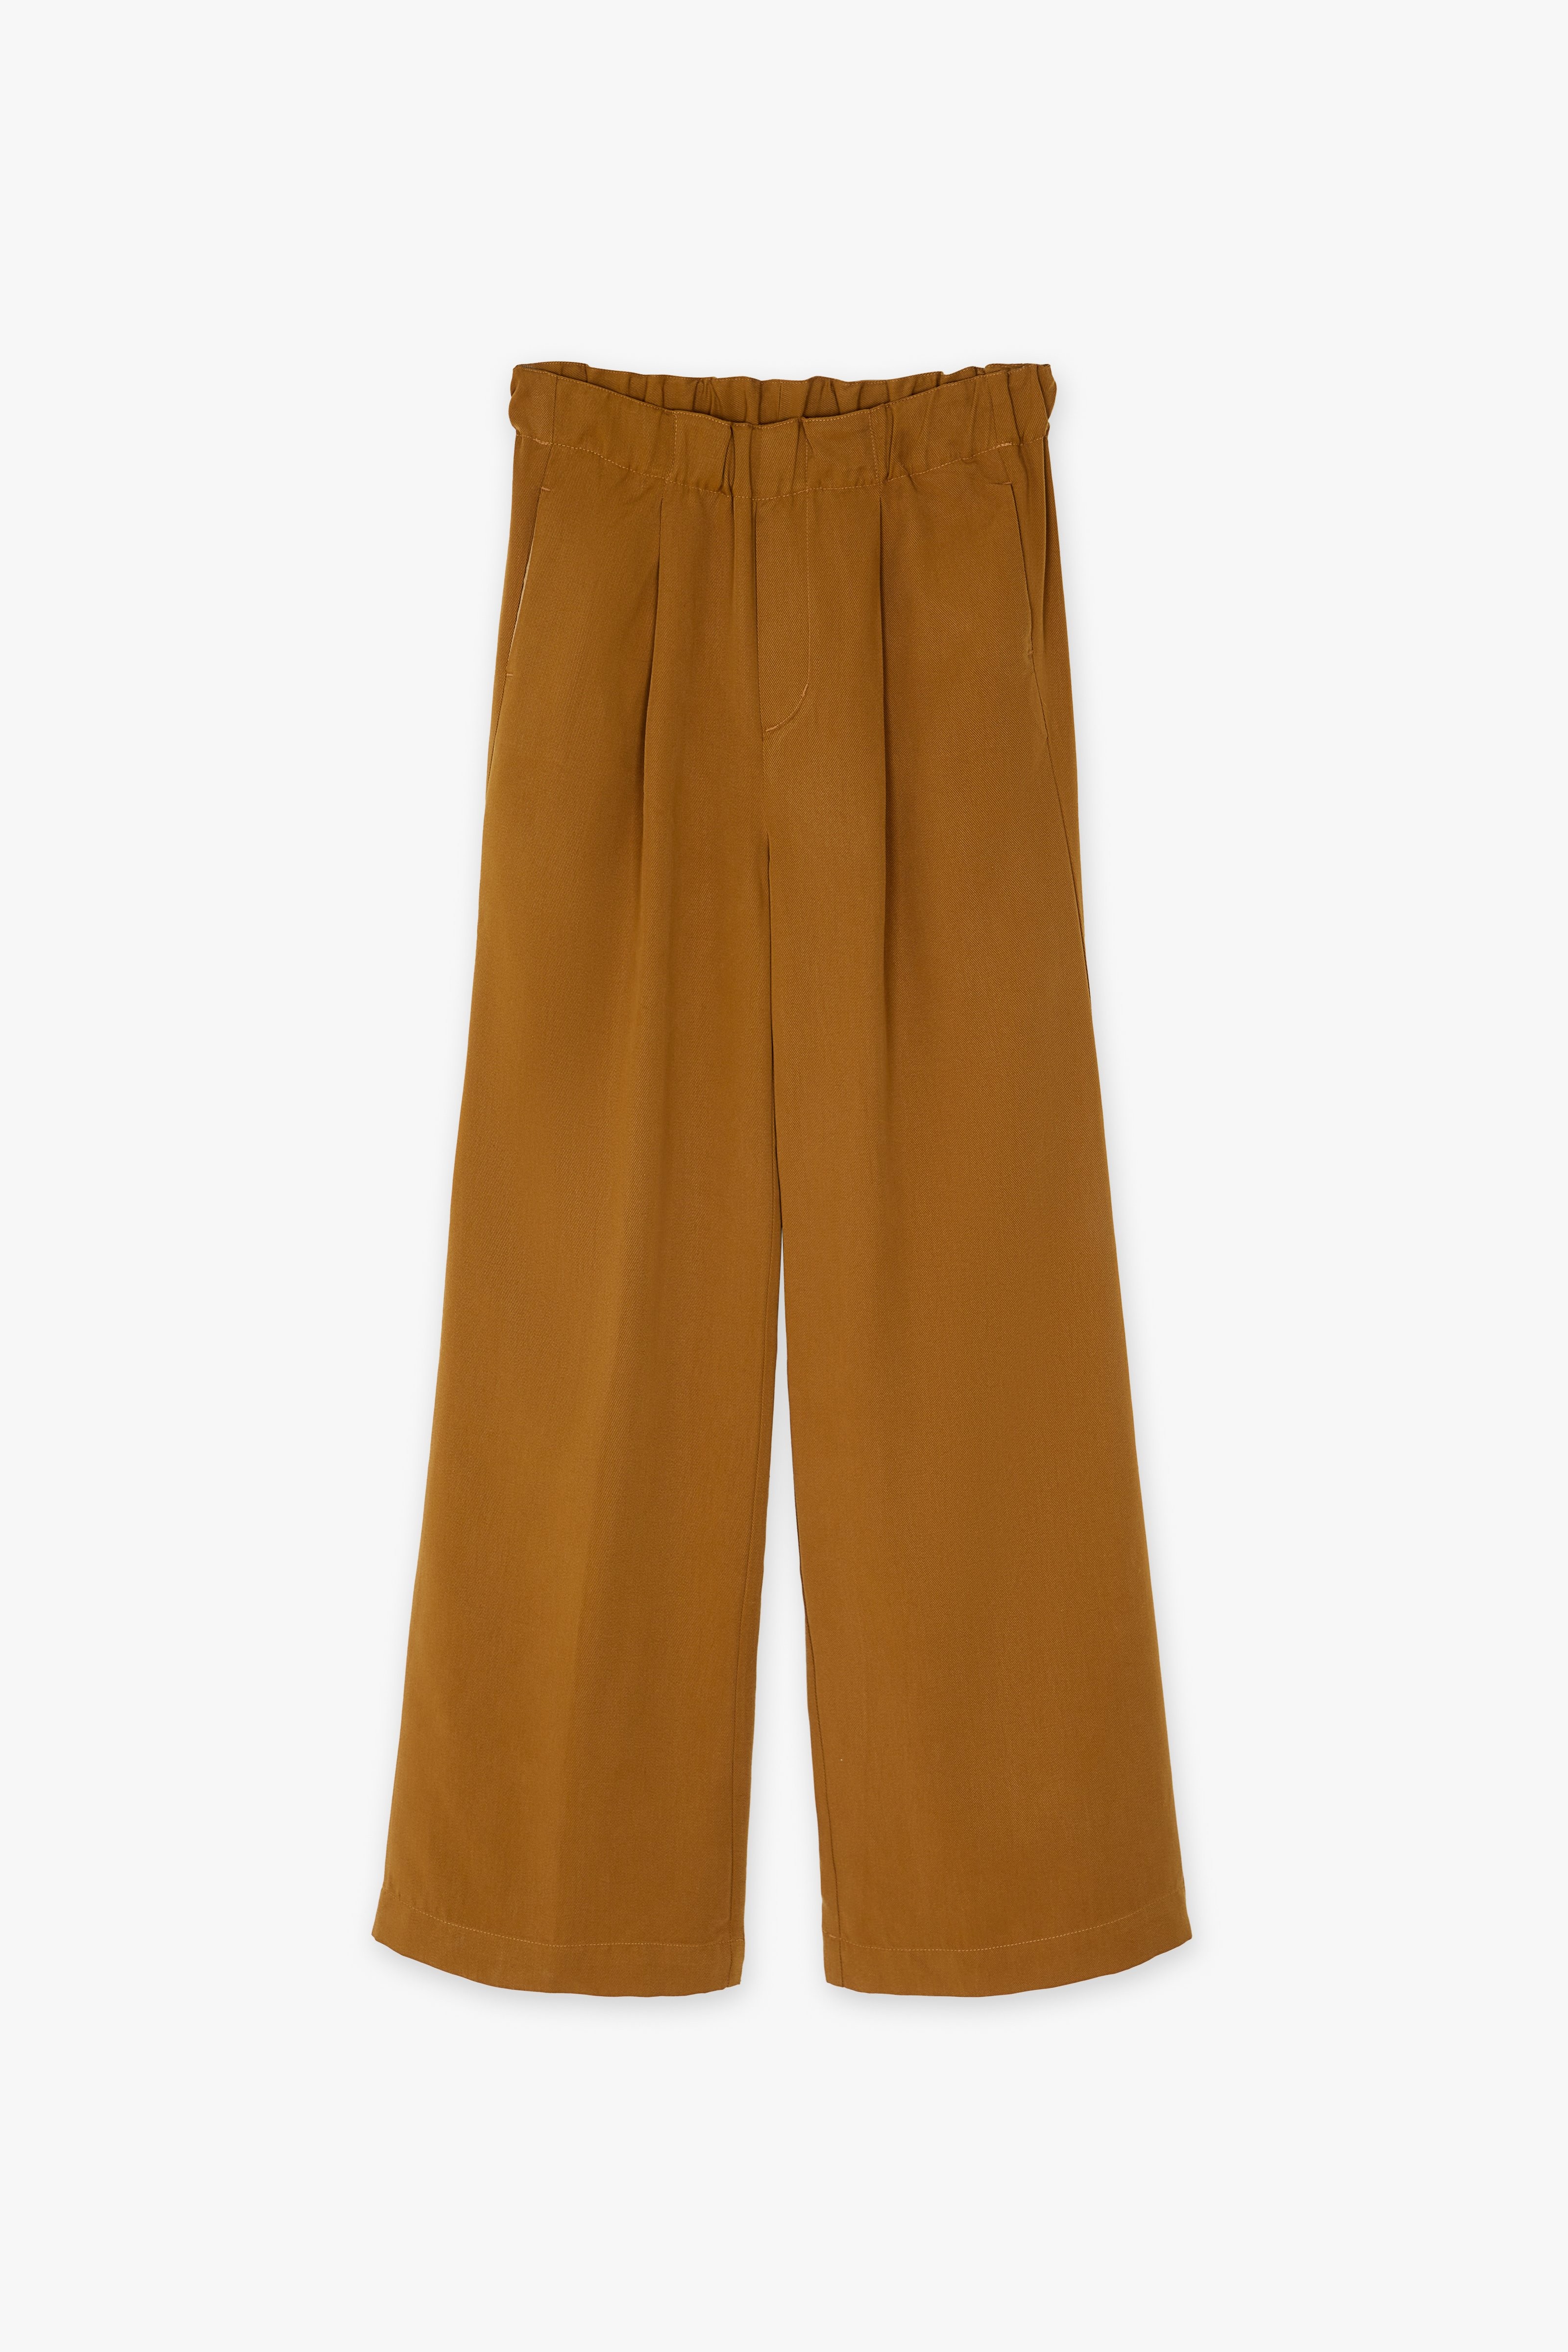 CKS Dames - LAUSANNE - pantalon long - brun clair